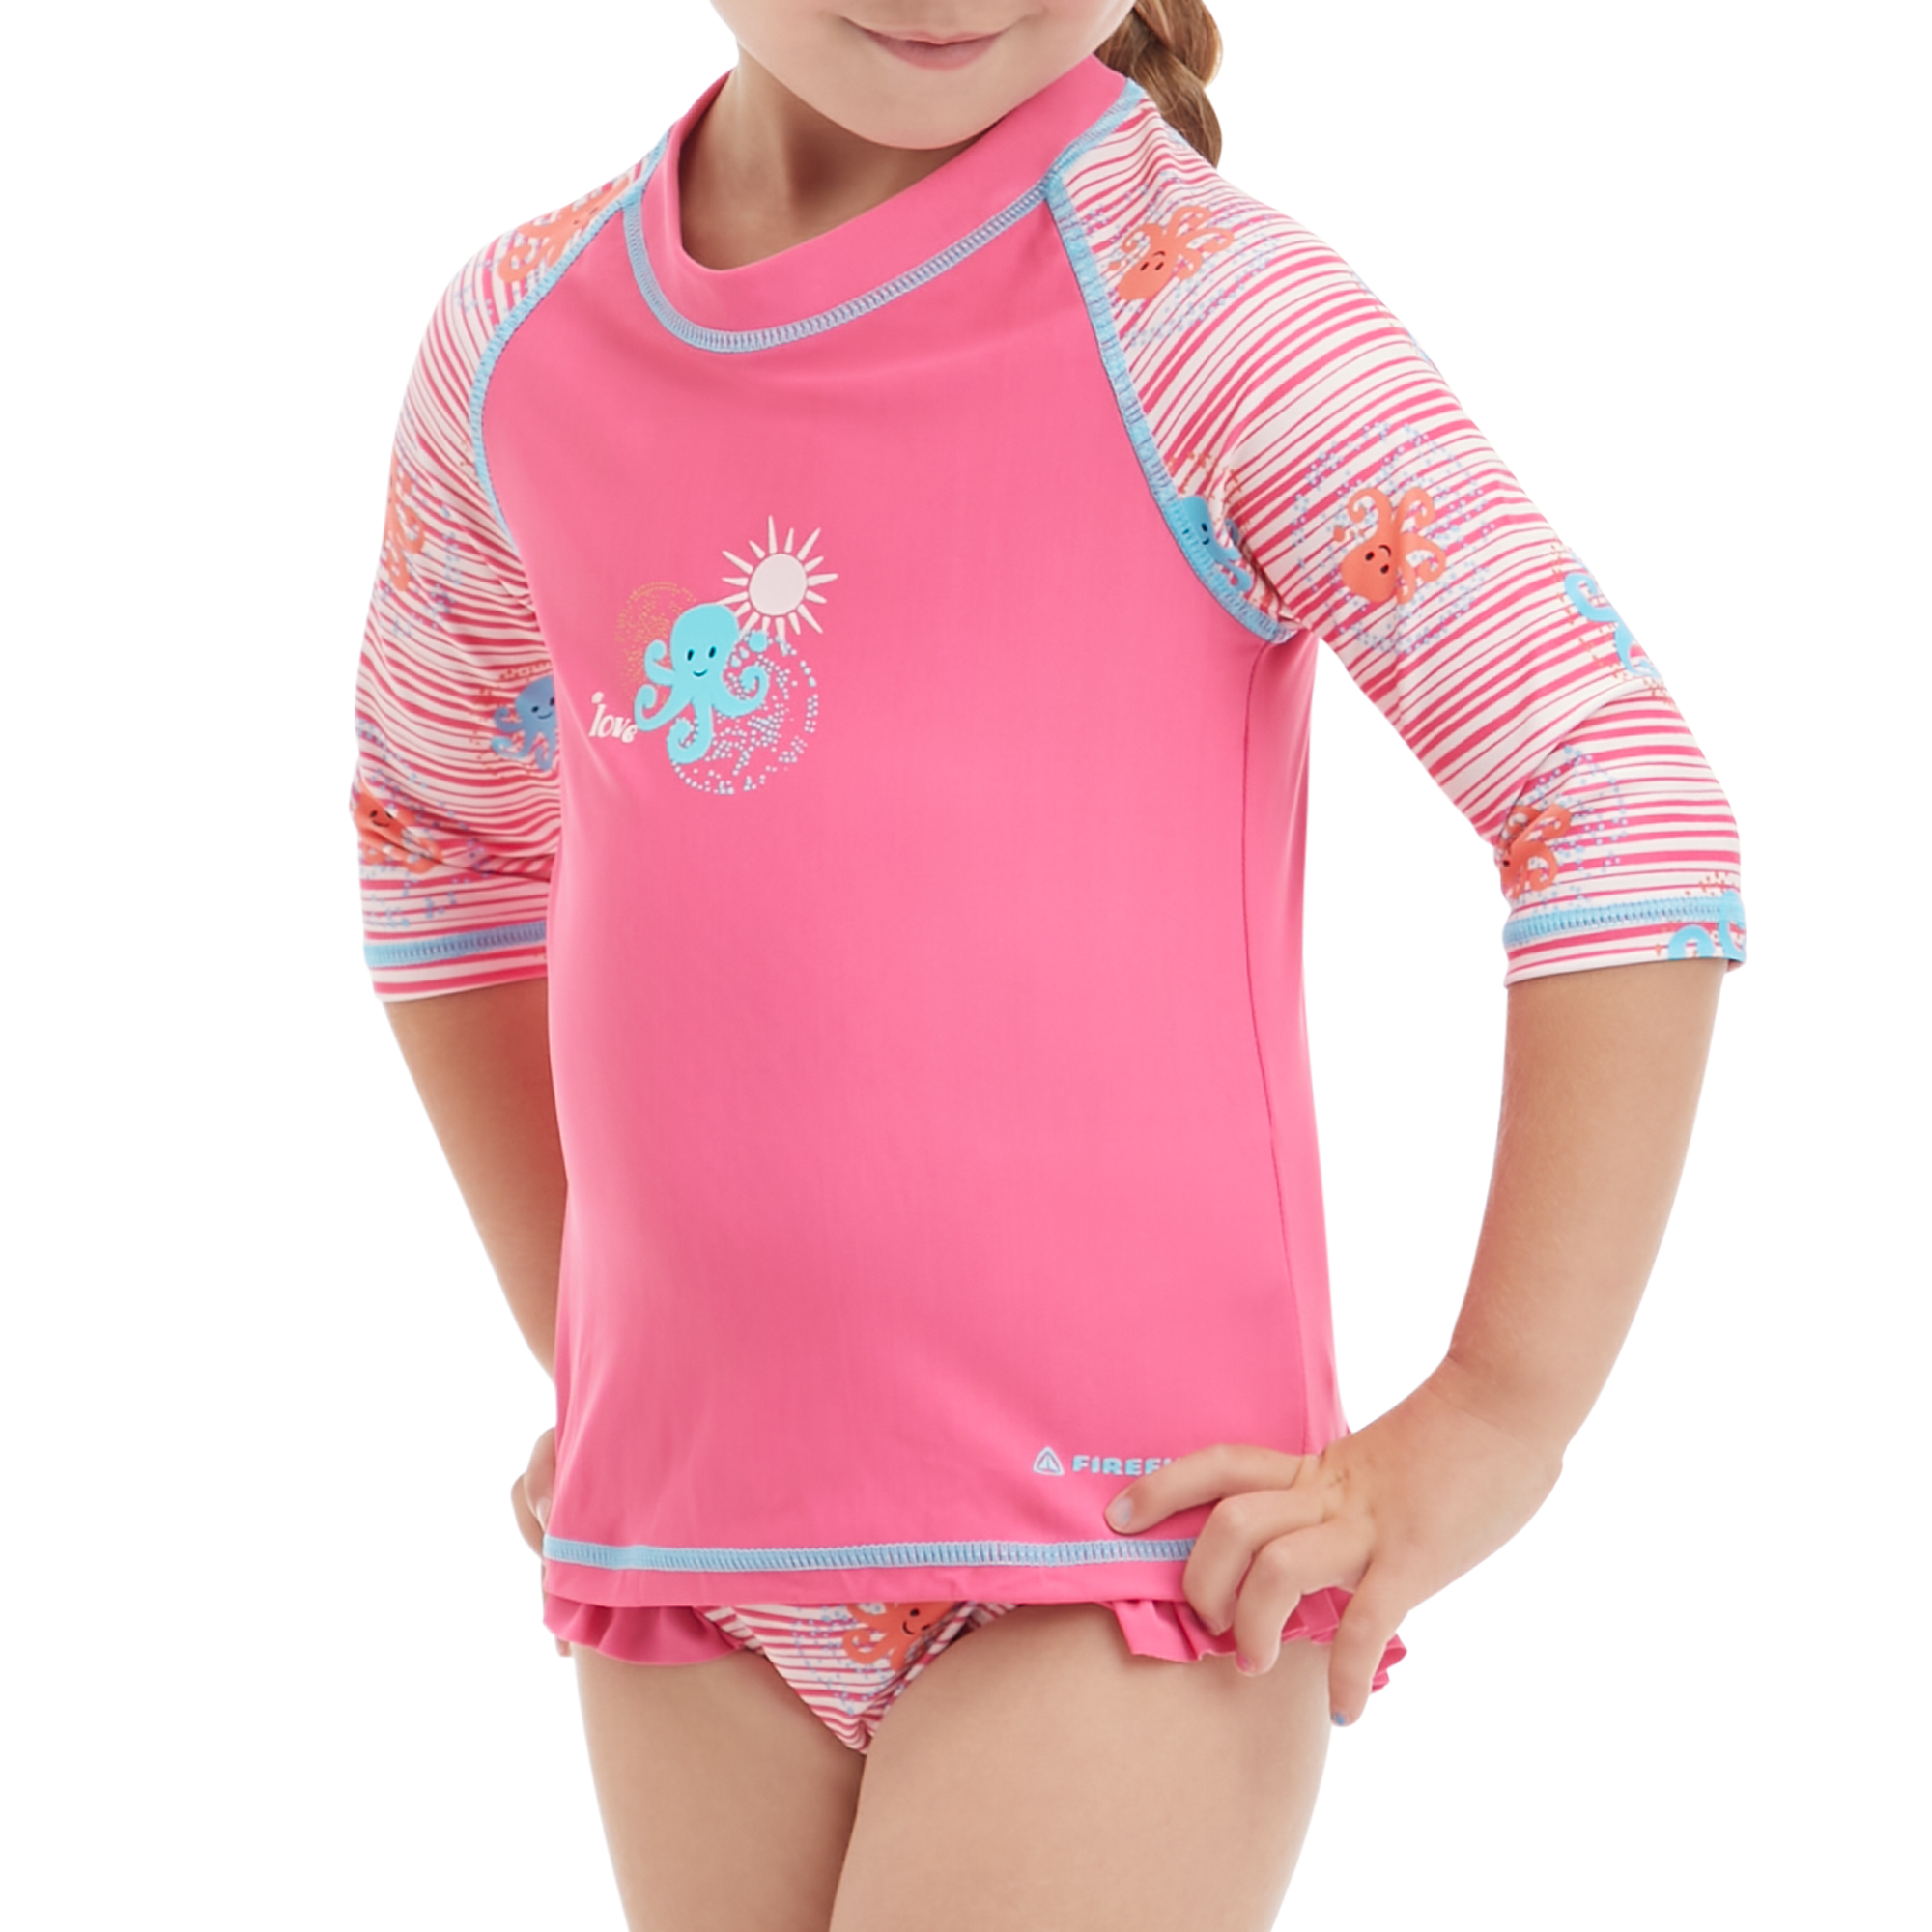 Zdjęcia - Skafander nurkowy Firefly Koszulka do pływania dla dzieci  BB Sonny Kids 412918 395/pink 104 